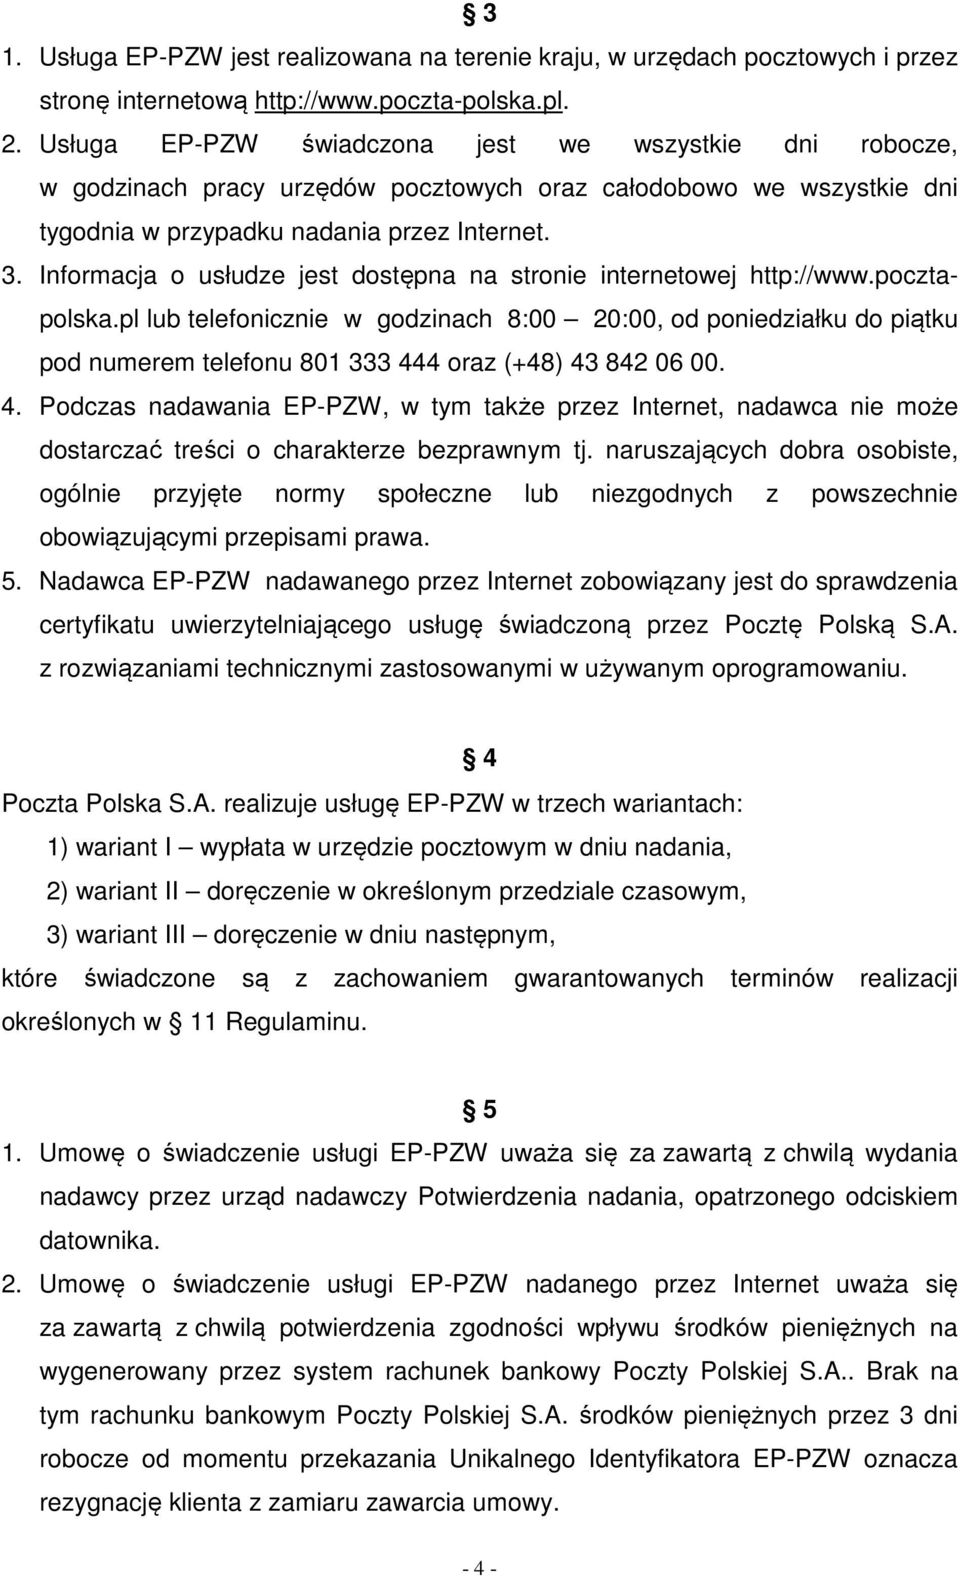 Informacja o usłudze jest dostępna na stronie internetowej http://www.pocztapolska.